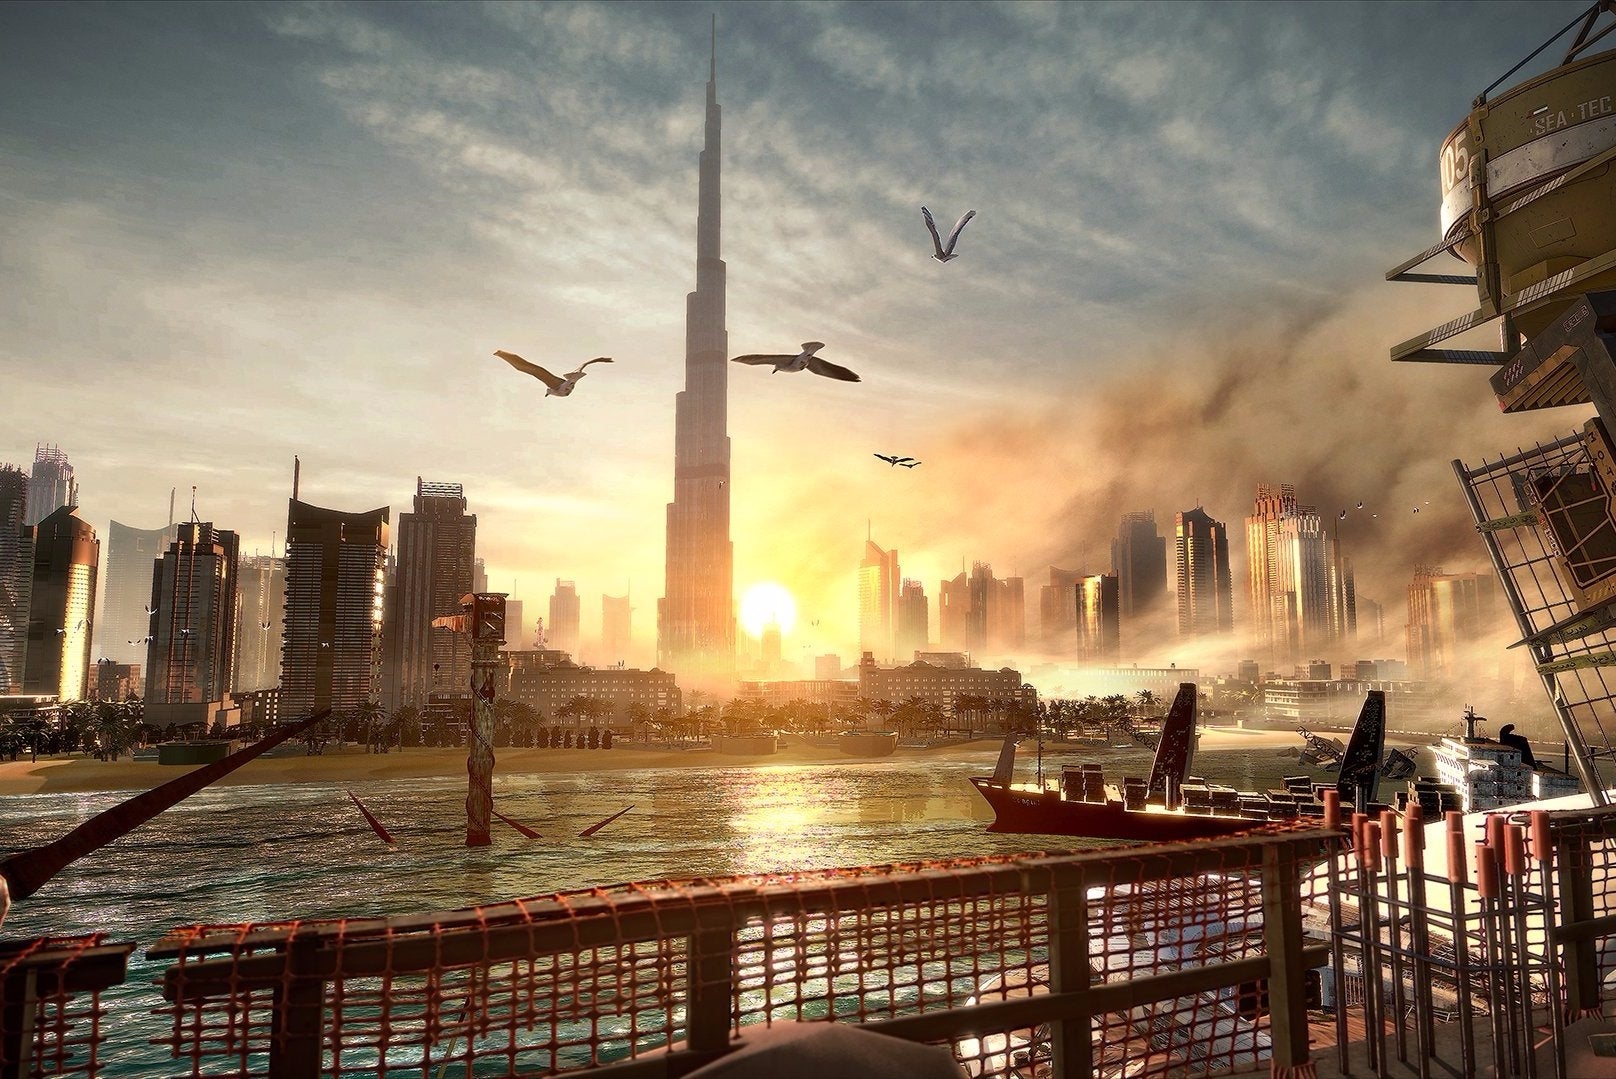 Bilder zu Deus Ex: Mankind Divided - Neonnächte, K steht für Kazdy, Convention Center